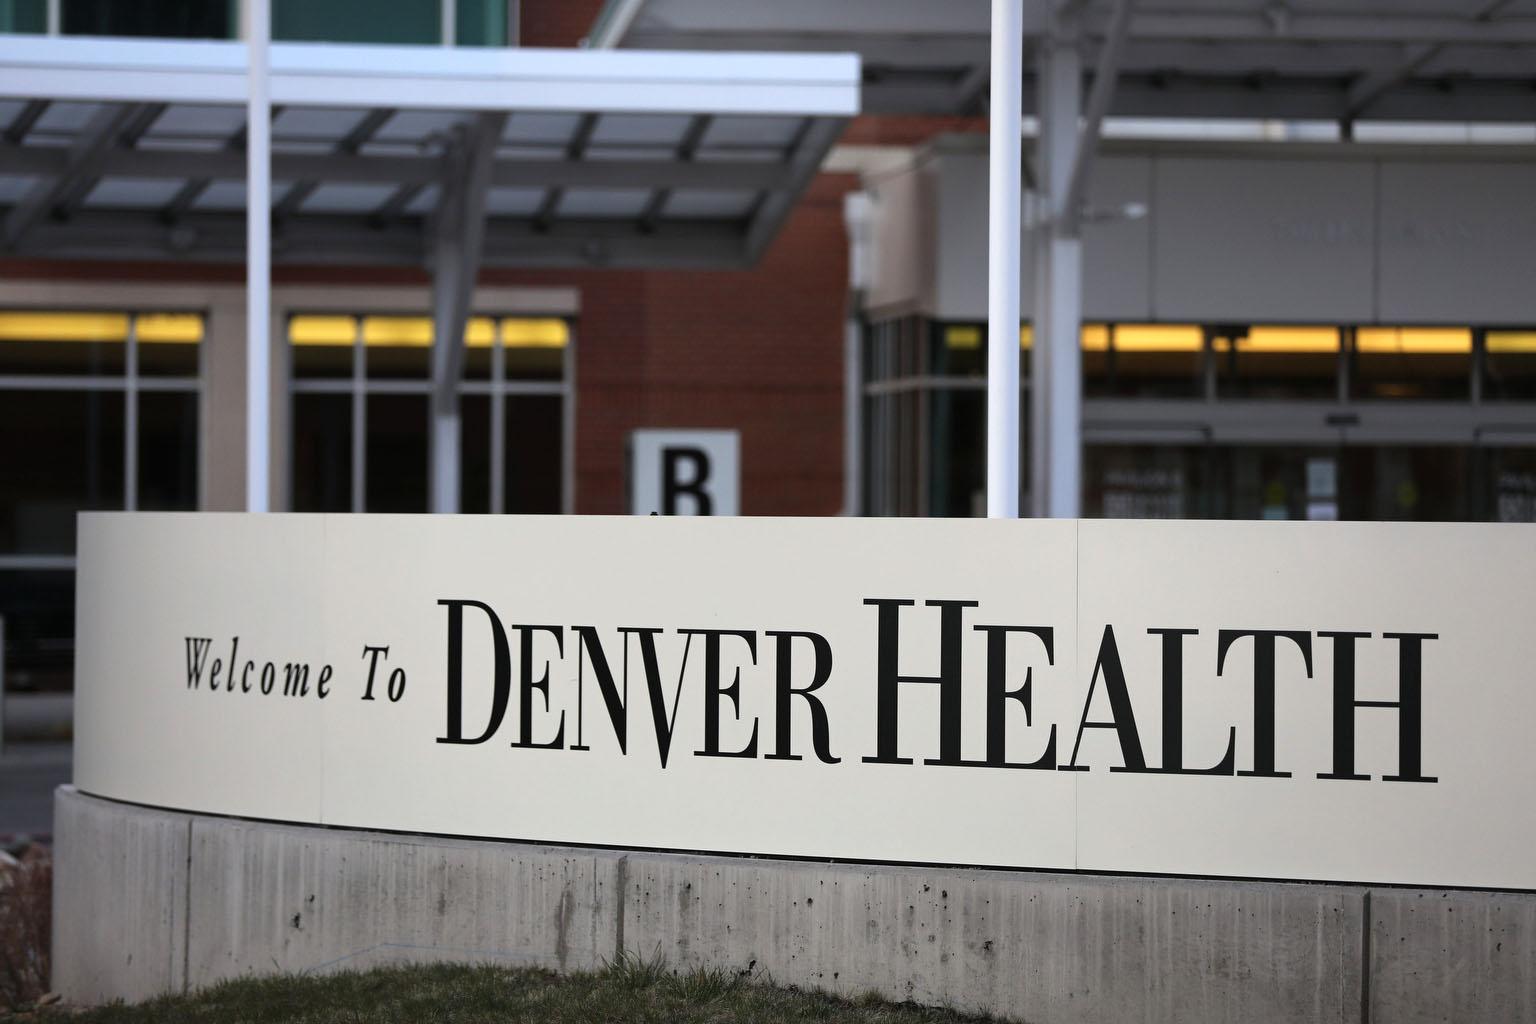 Denver Health medical center in Denver